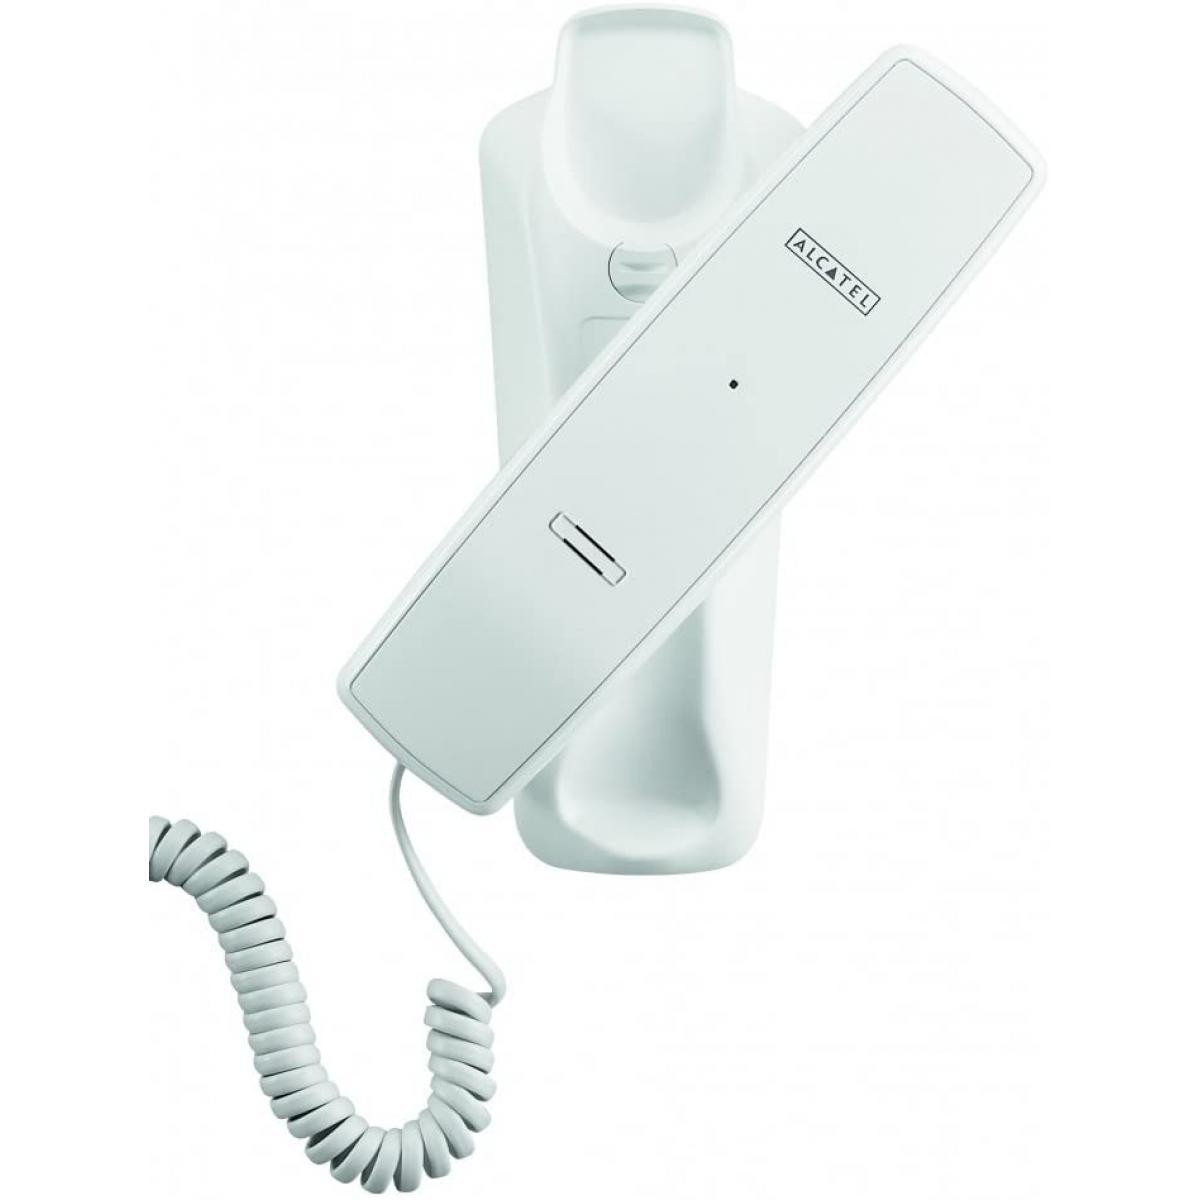 Alcatel - telephone Filaire Monobloc Fixation murale Blanc - Téléphone fixe filaire